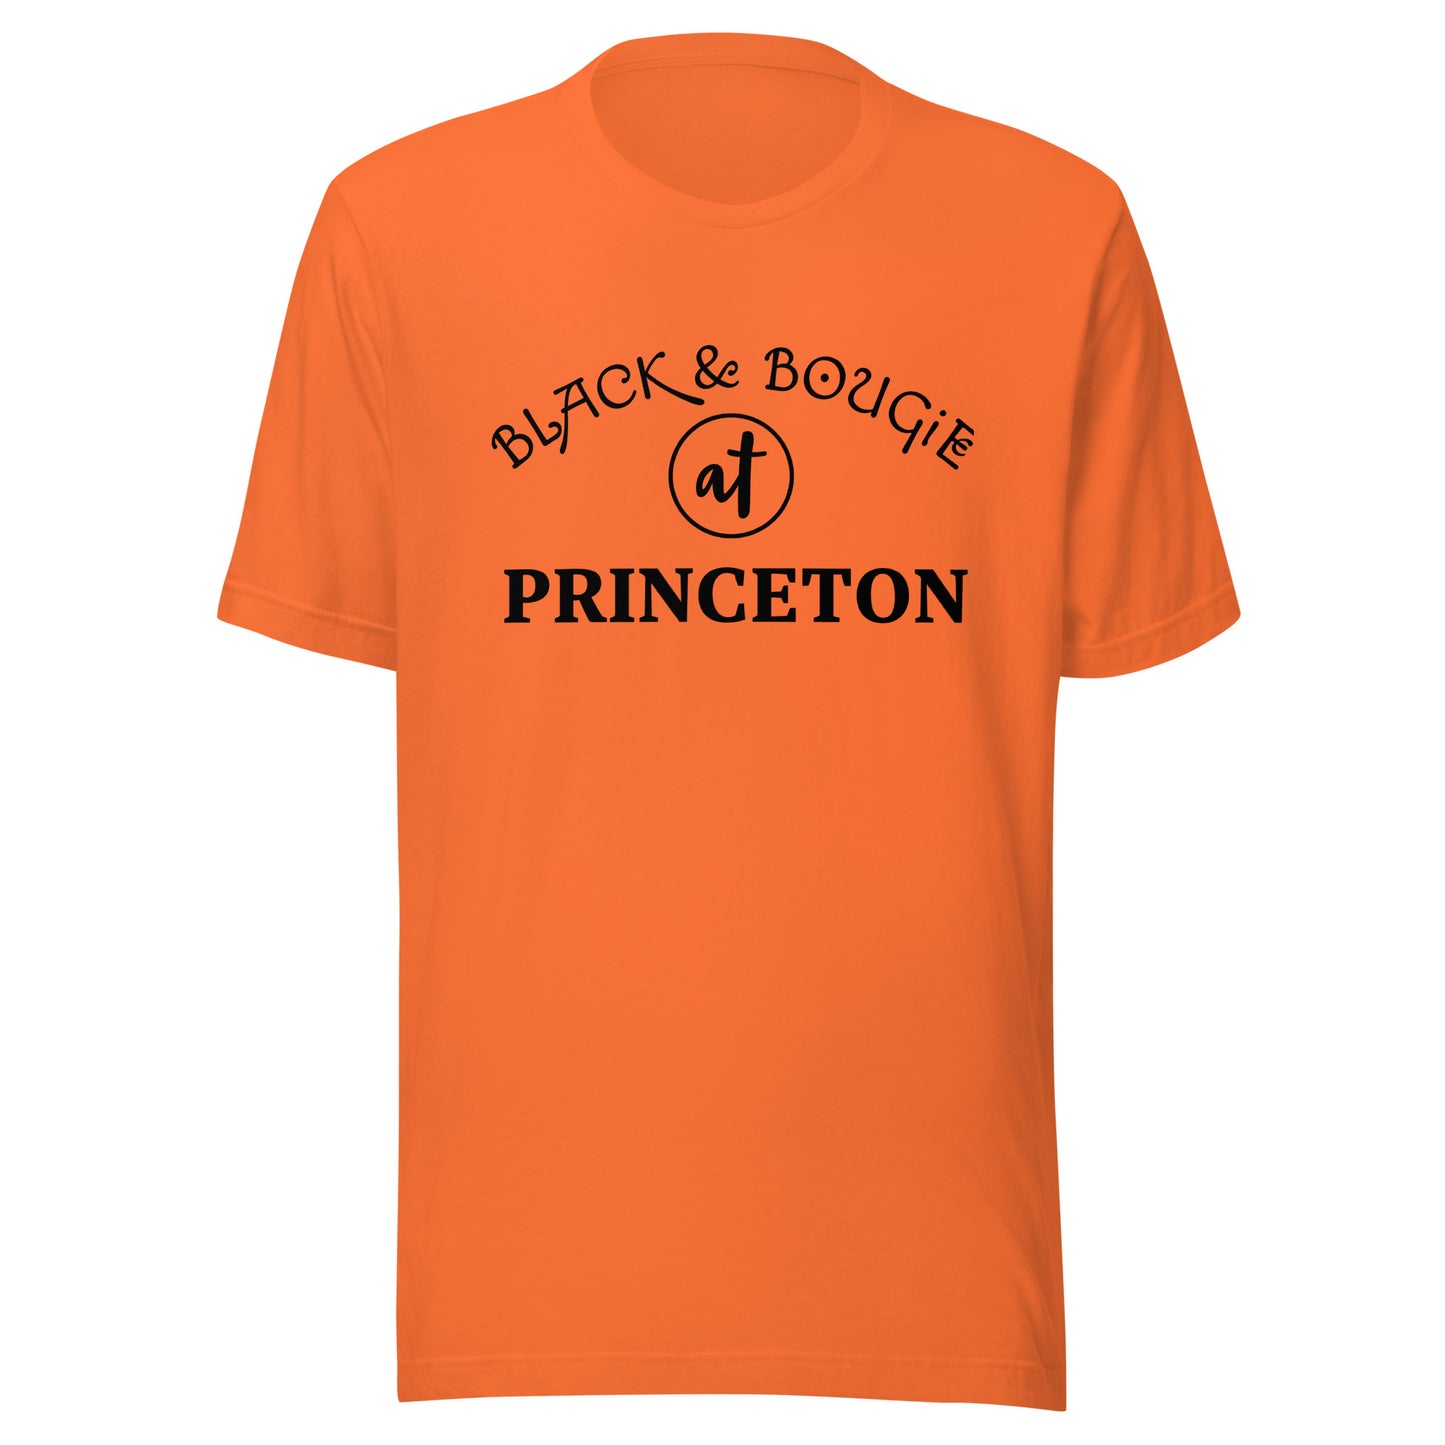 B & B at Princeton - Orange T Shirt